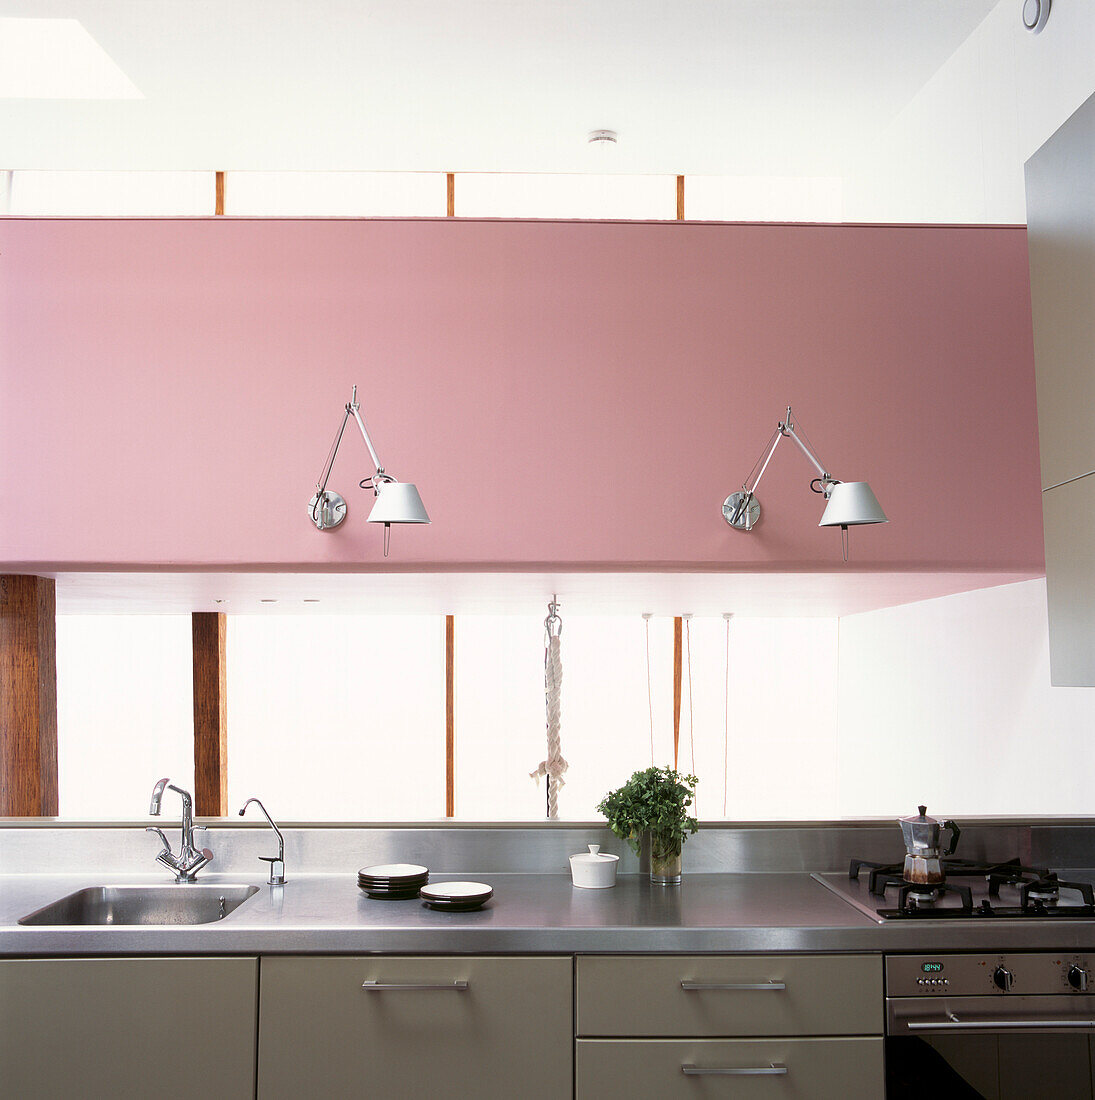 Moderne Küche mit freitragenden Wandleuchten aus Aluminium an einer auffallend rosafarbenen Wand über einer Arbeitsplatte aus Edelstahl auf grauen Einbauschränken